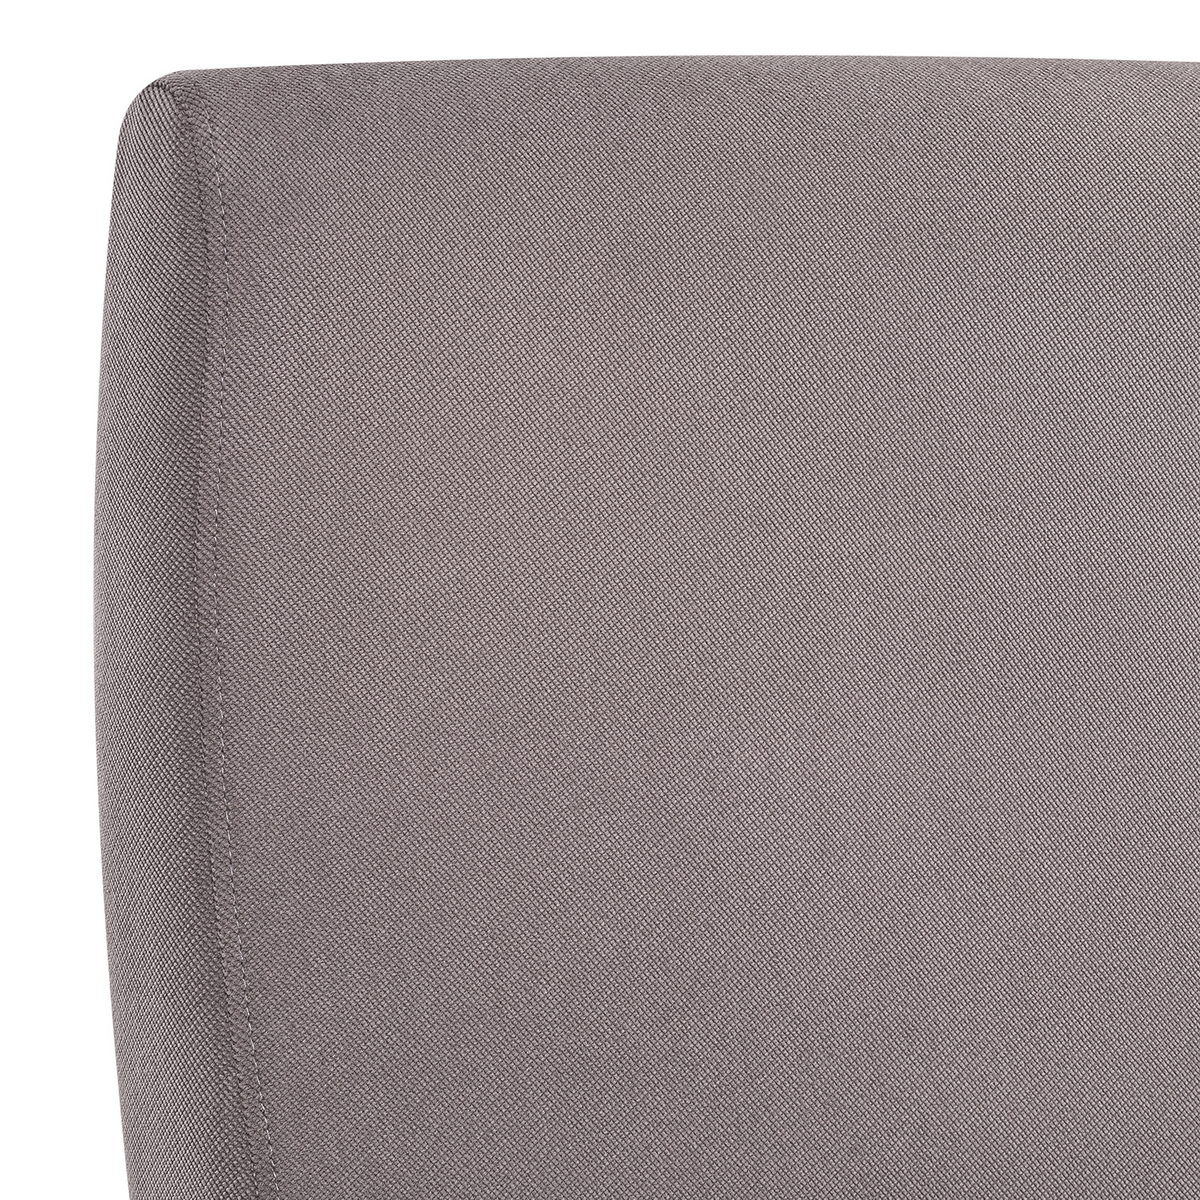 Кресло-глайдер Модель 68М (Импэкс). Цвет каркаса: Венге; Цвет обивки: Verona Antrazite Grey